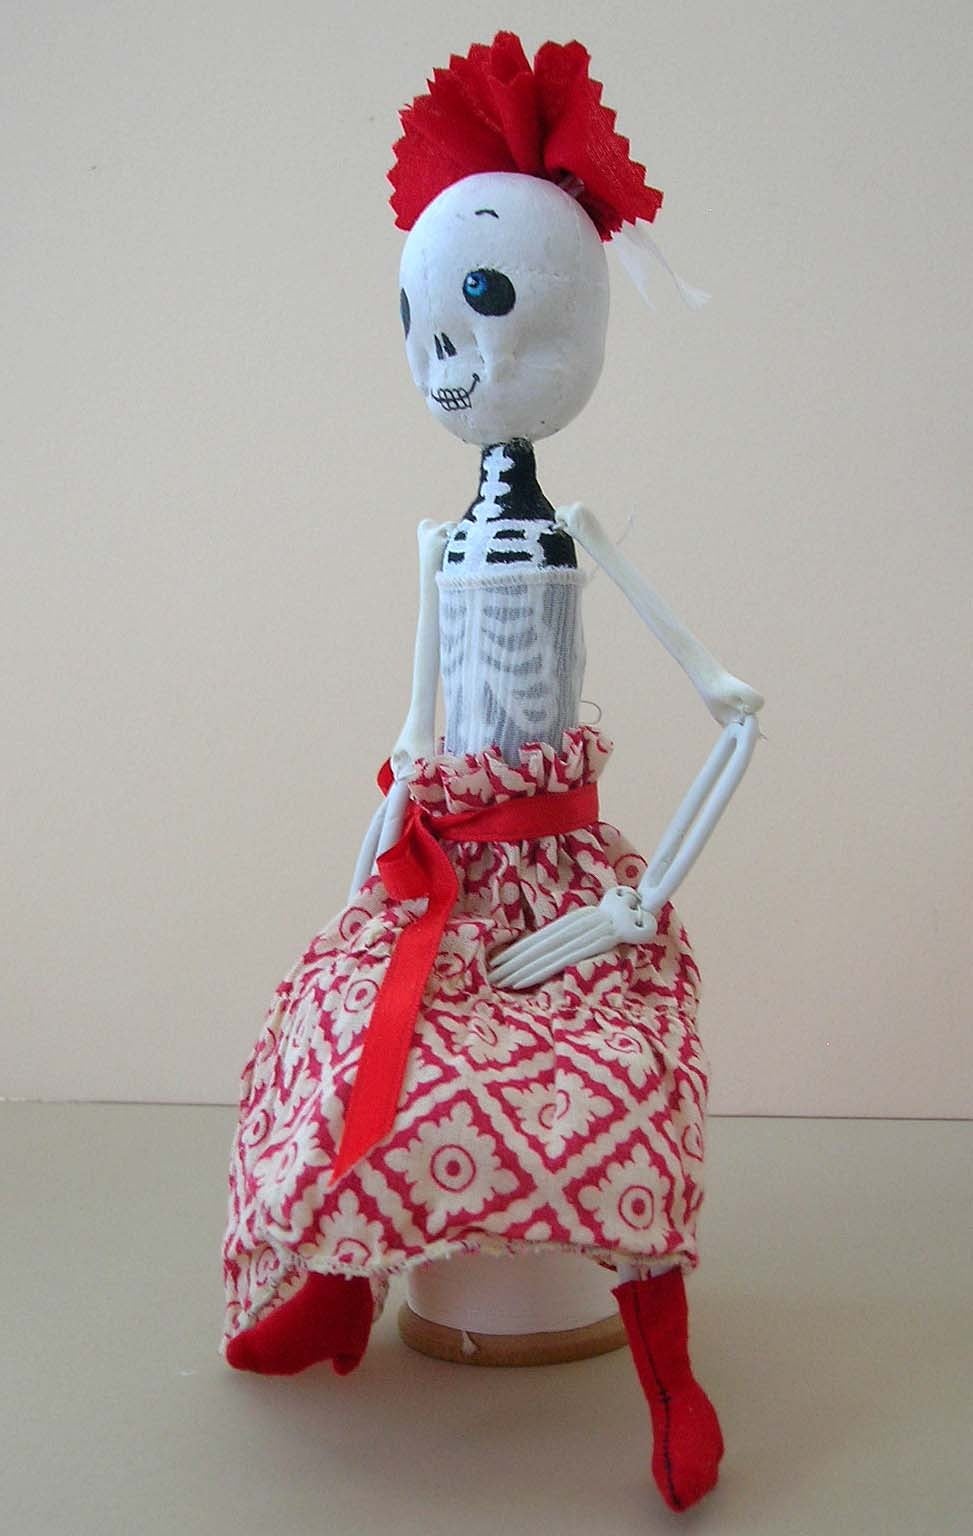 Skeleton Doll - Folk Art Mixed Media Art by Margarita Hernández-Maxson